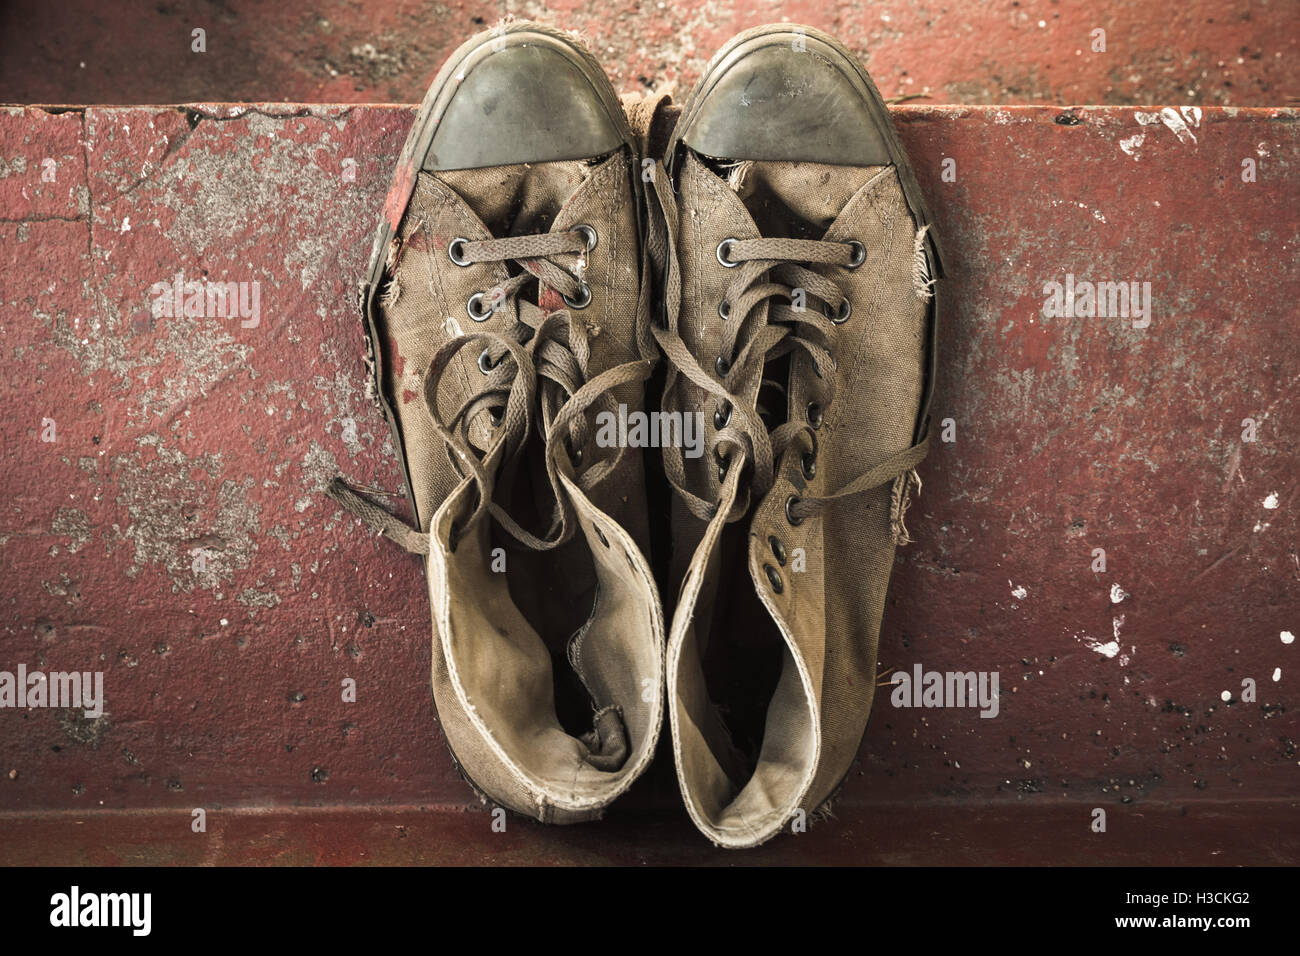 Old sneakers e imágenes de alta resolución - Alamy